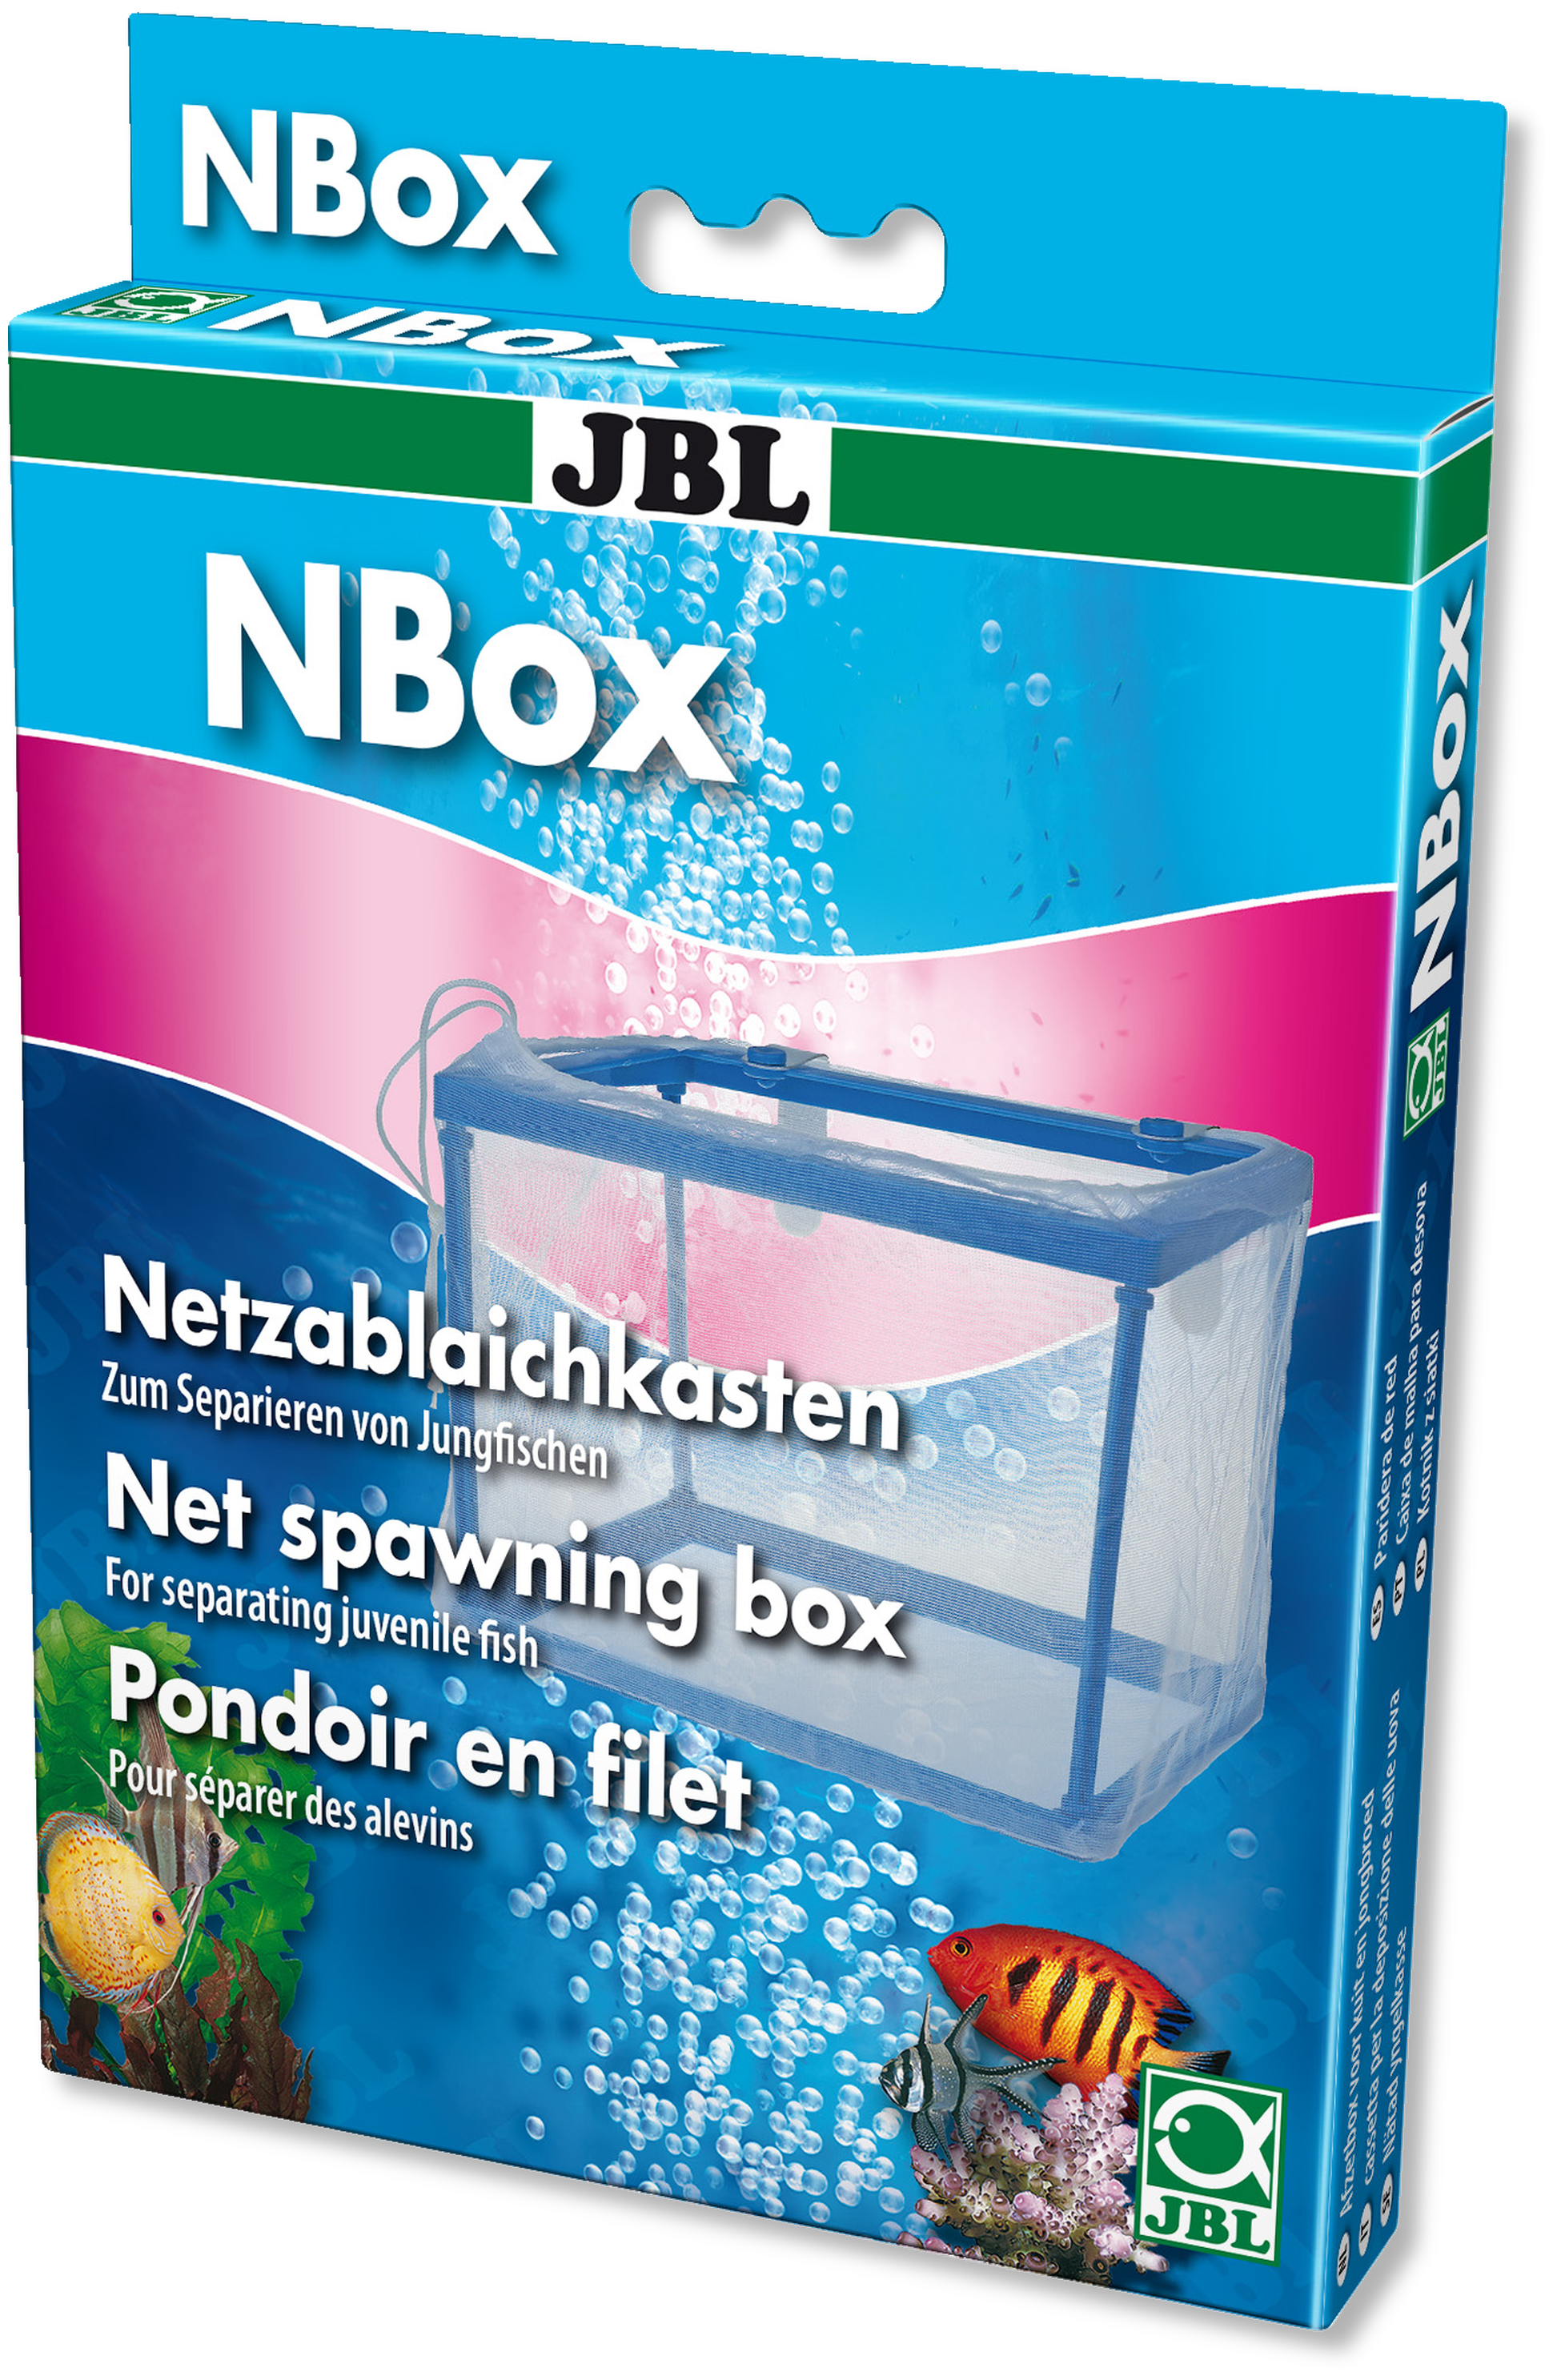 JBL N-Box, Netzablaichkasten 17 x 12.5 cm H 13.5 cm, 2 l